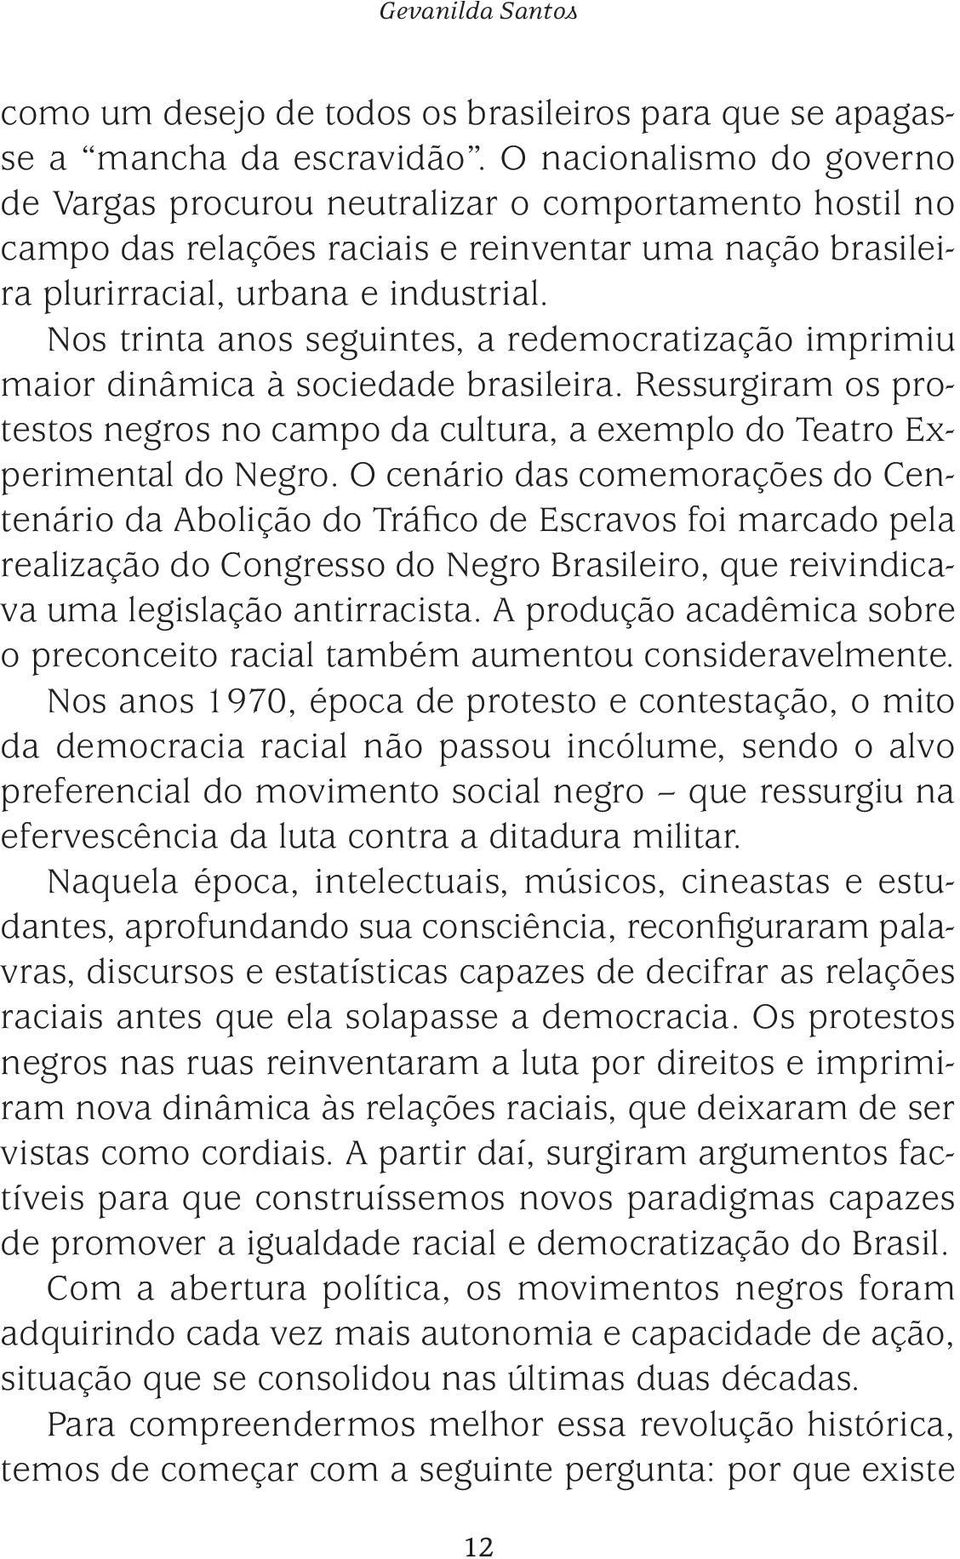 Nos trinta anos seguintes, a redemocratização imprimiu maior dinâmica à sociedade brasileira. Ressurgiram os protestos negros no campo da cultura, a exemplo do Teatro Experimental do Negro.